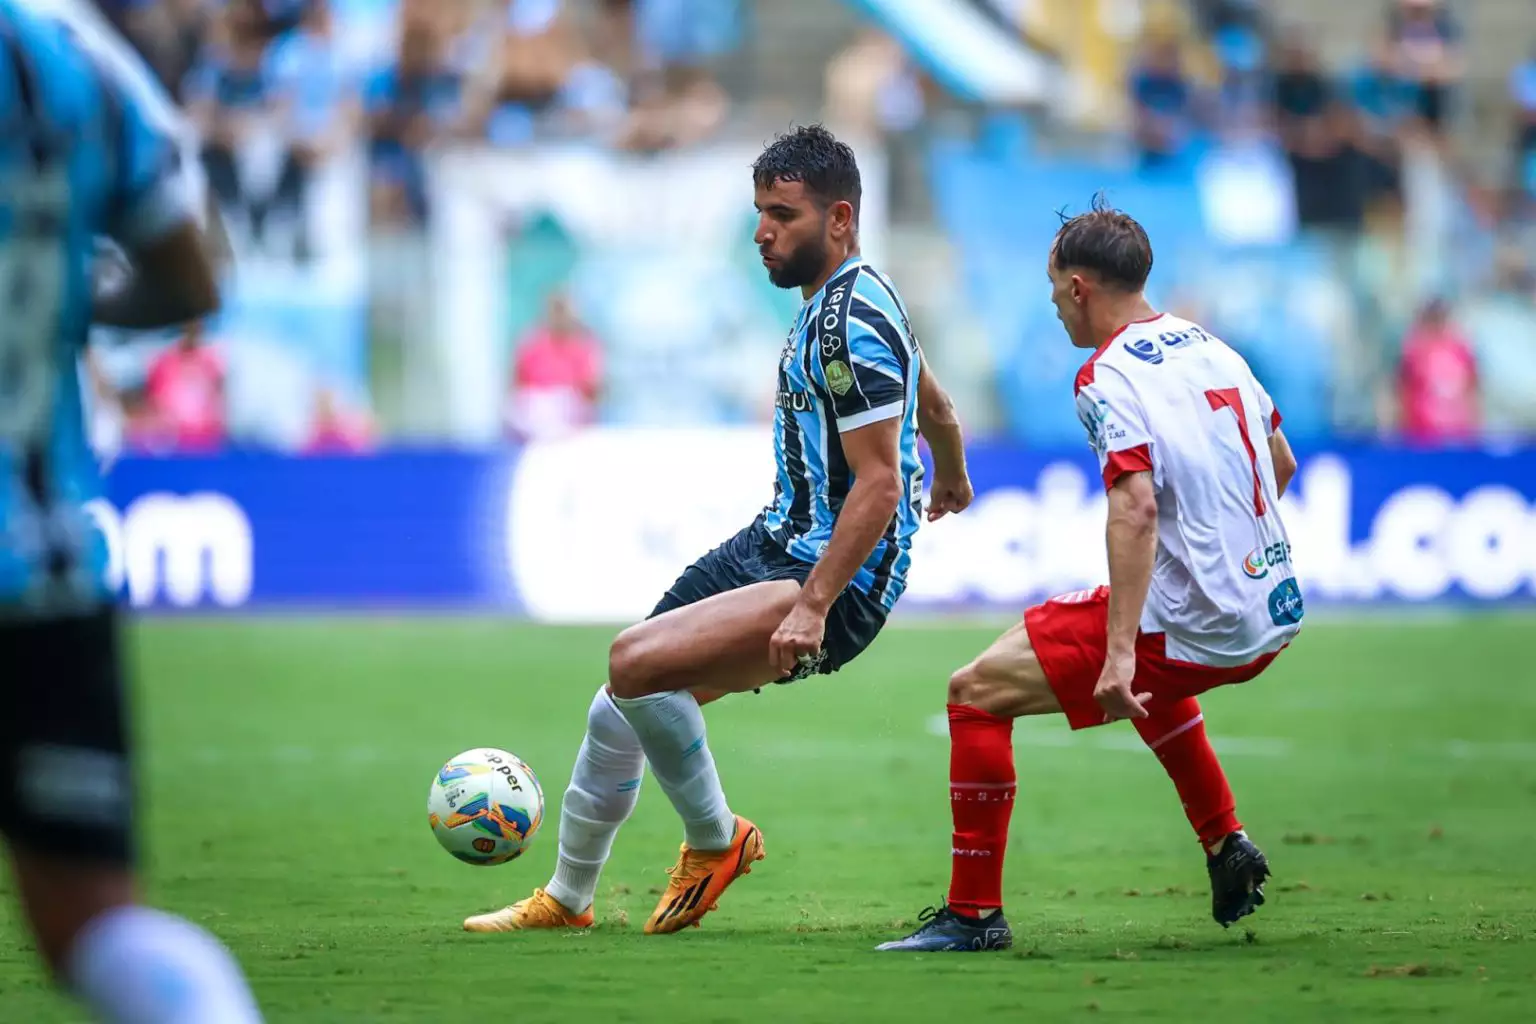 O Grêmio segue na primeira colocação com 16 pontos. Foto: Lucas Uebel/Grêmio FBPA